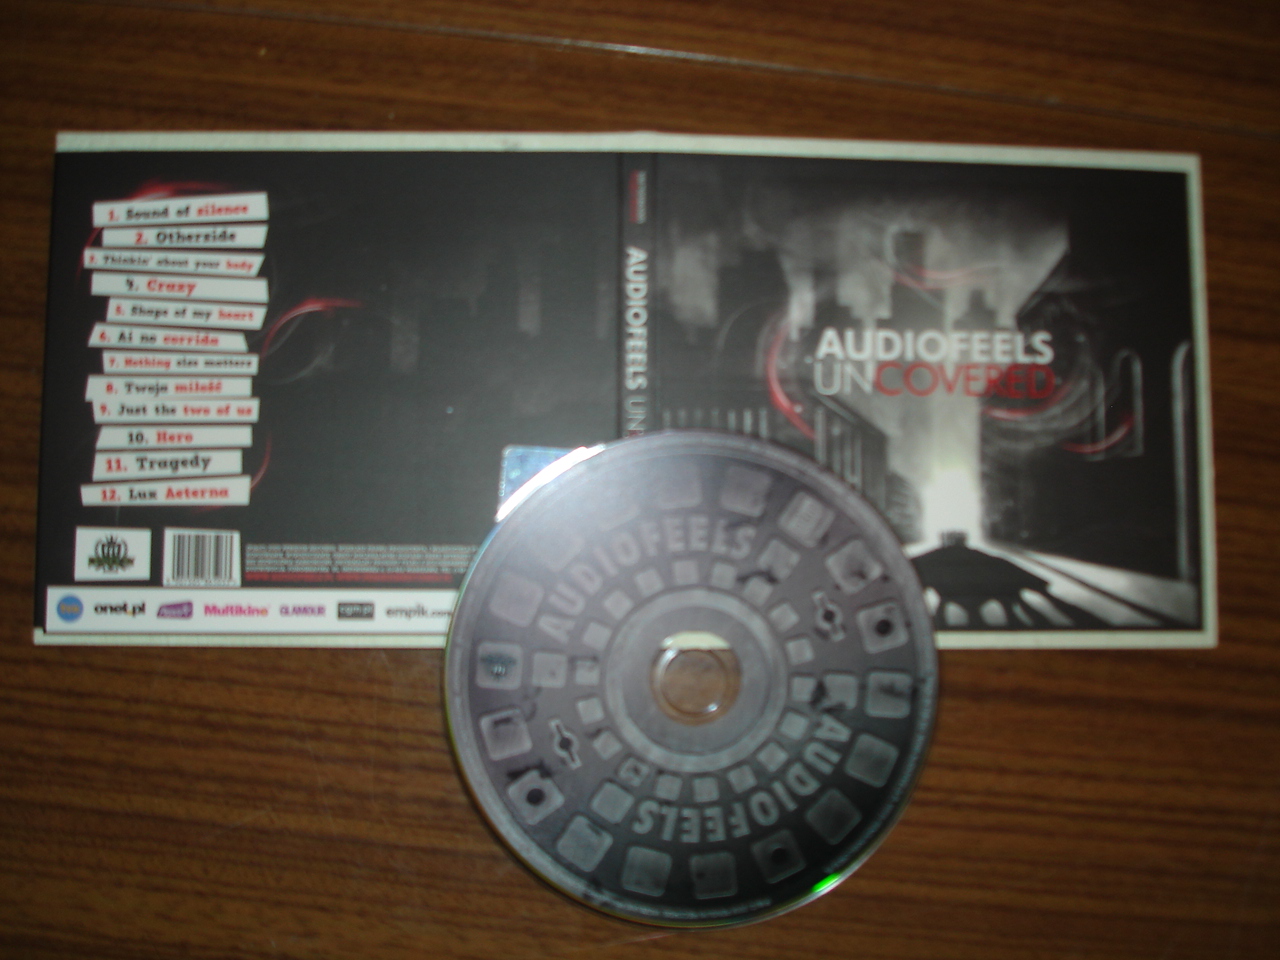 Audiofeels-Uncovered-2009 - 00-audiofeels-uncovered-2009.jpg